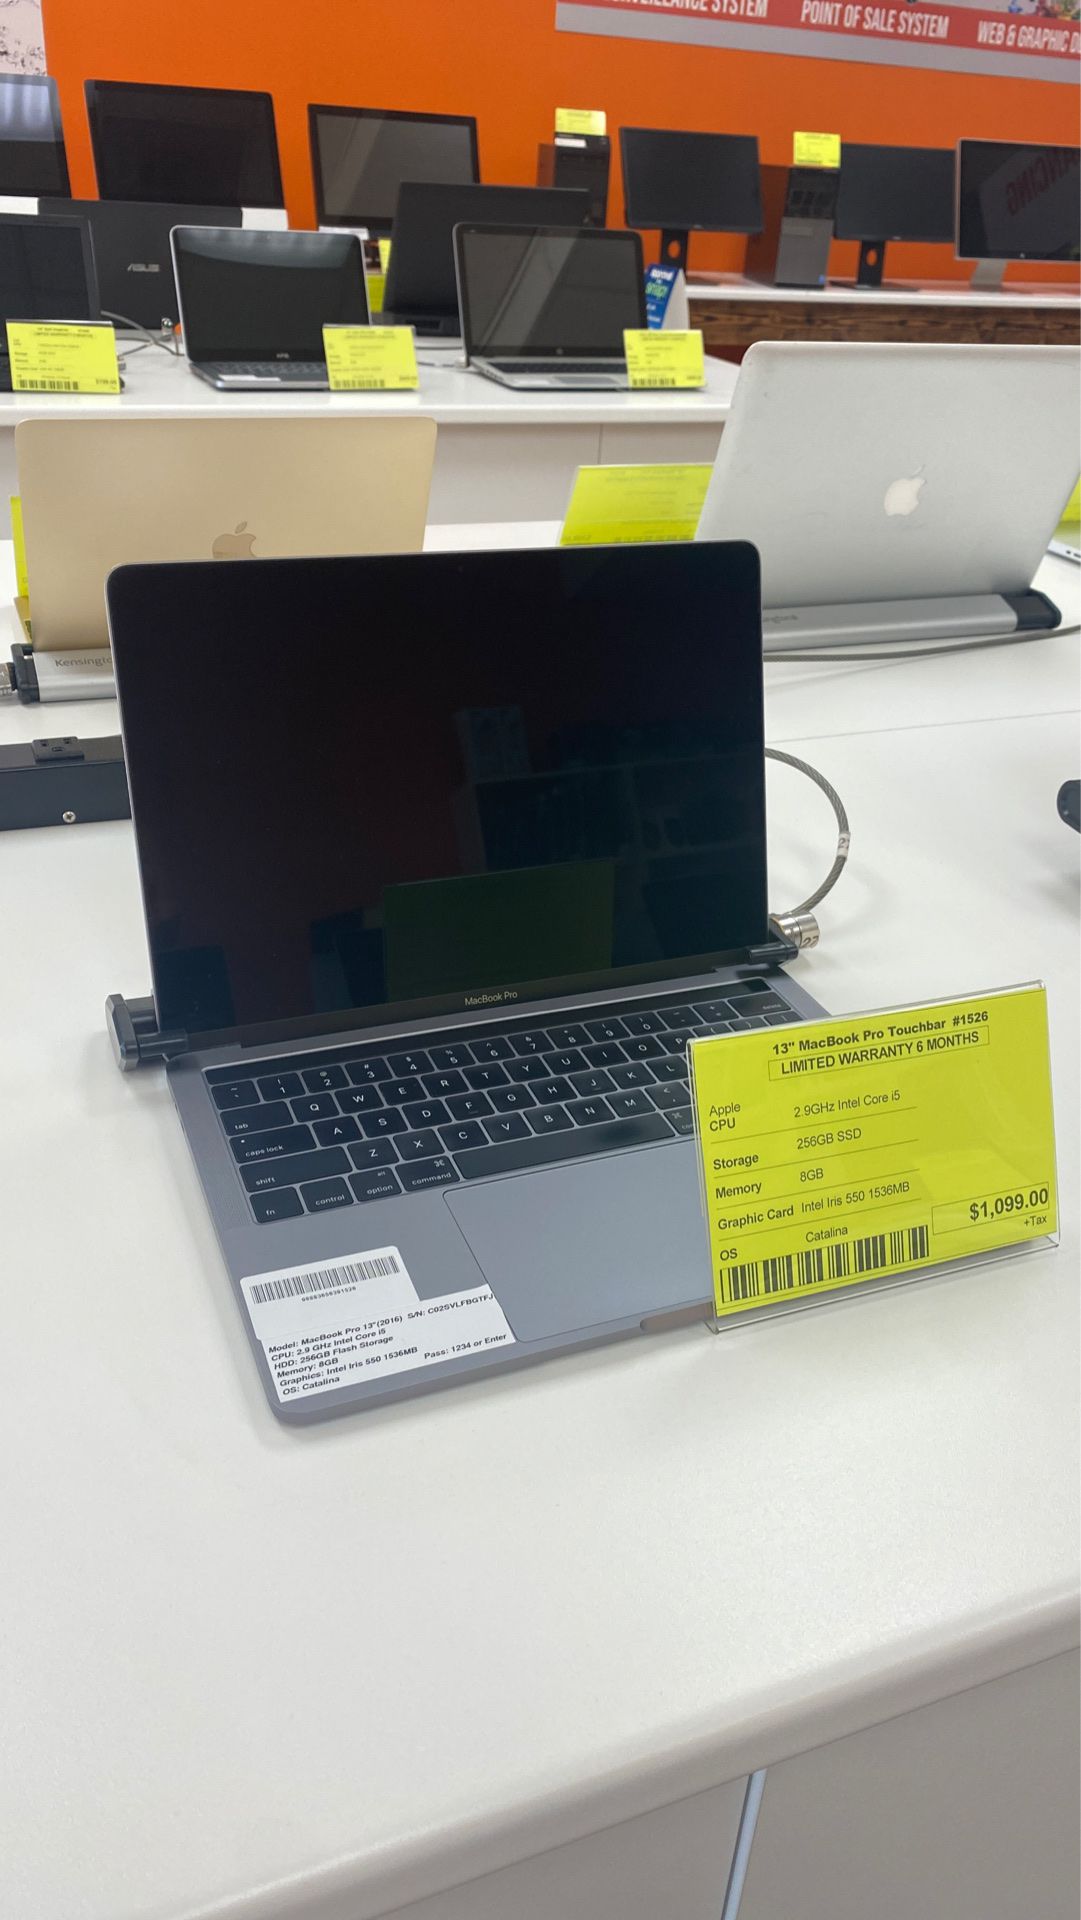 13” MacBook Pro TouchBar-2016 2.9GHz Core i5-256GB SSD 8GB RAM